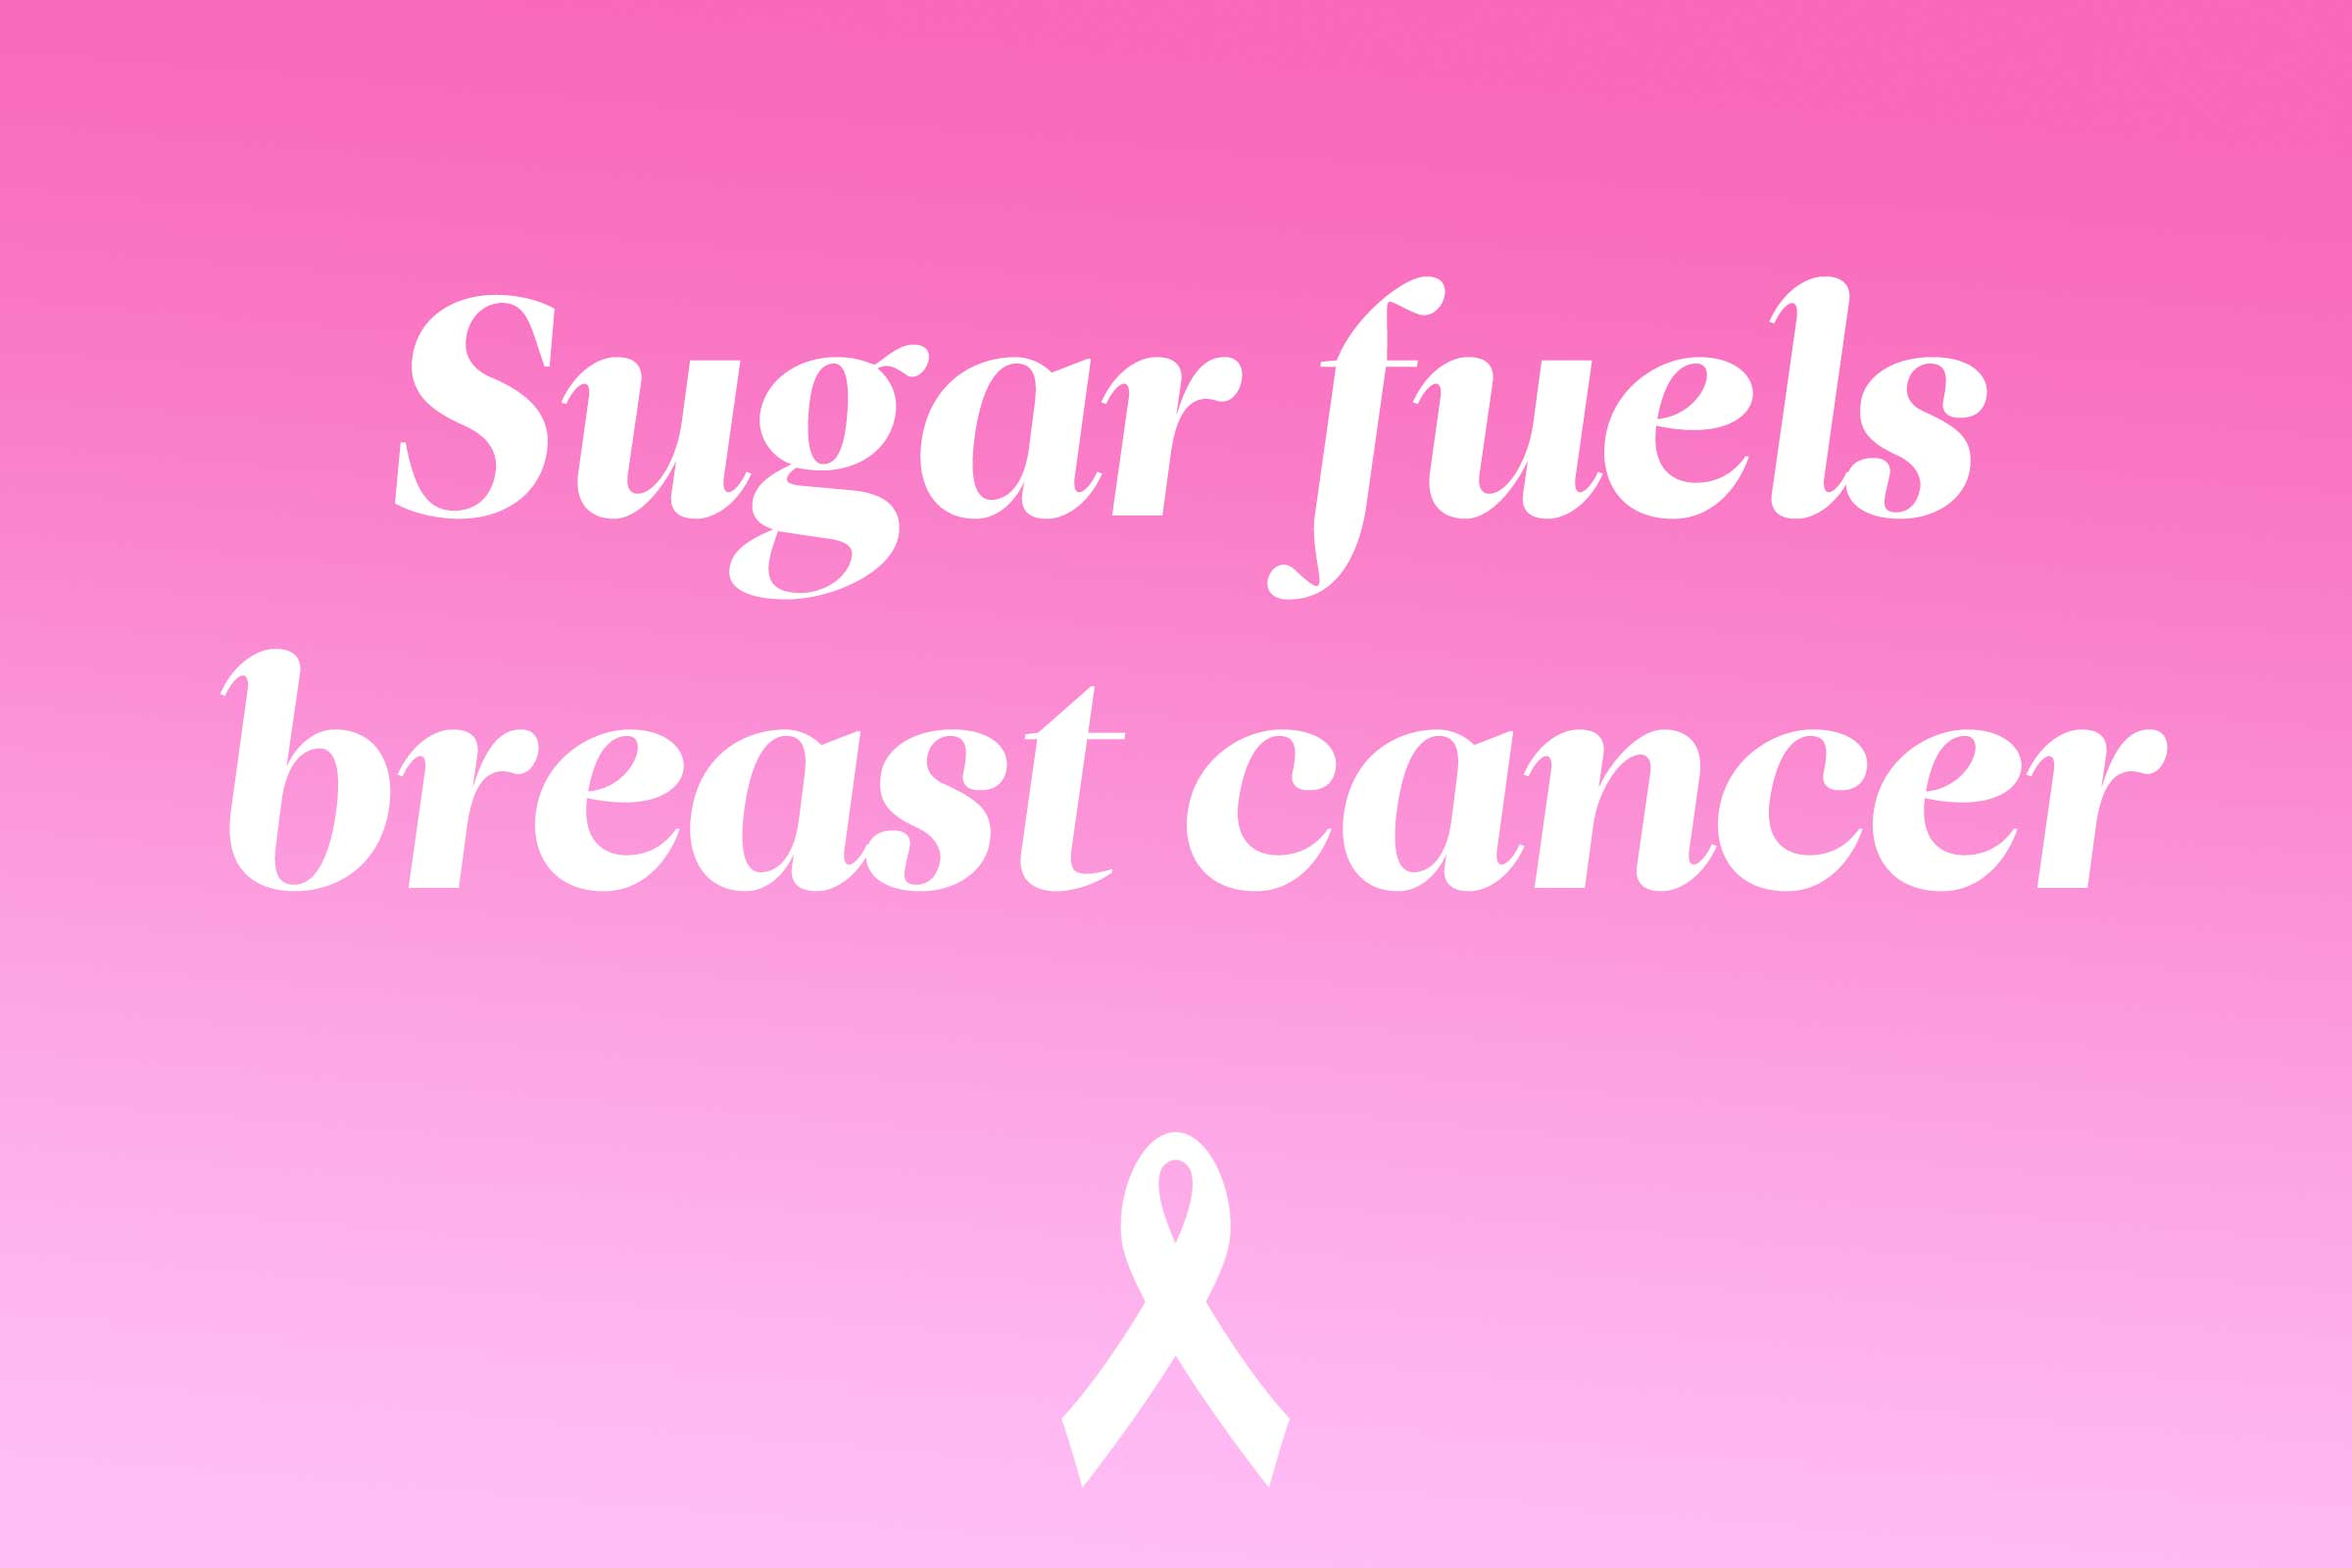 myth: sugar fuels breast cancer